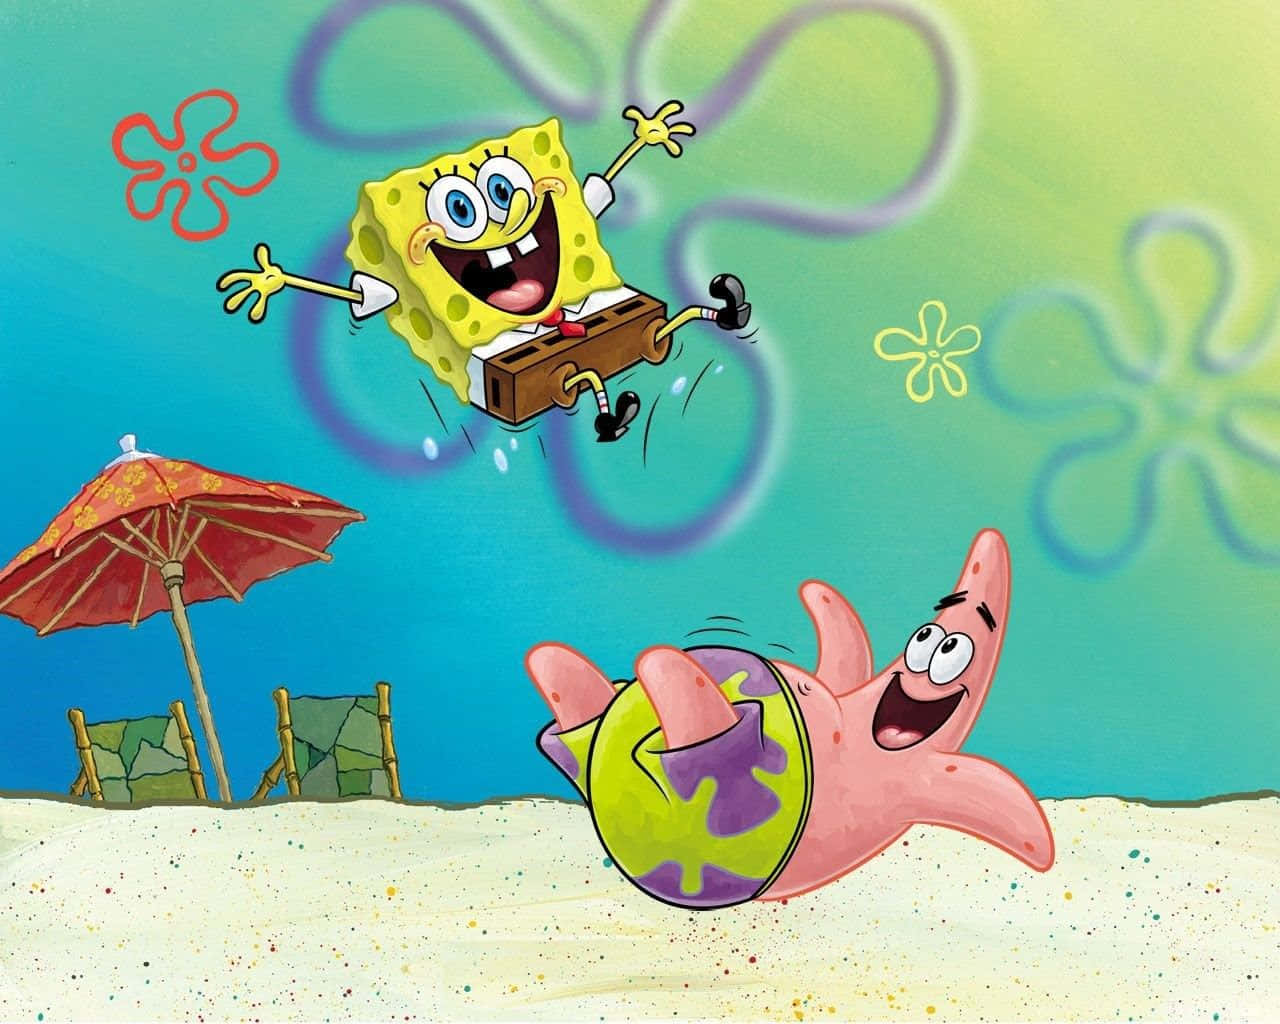 Patrick og SpongeBob leger omkring æstetisk tapet. Wallpaper